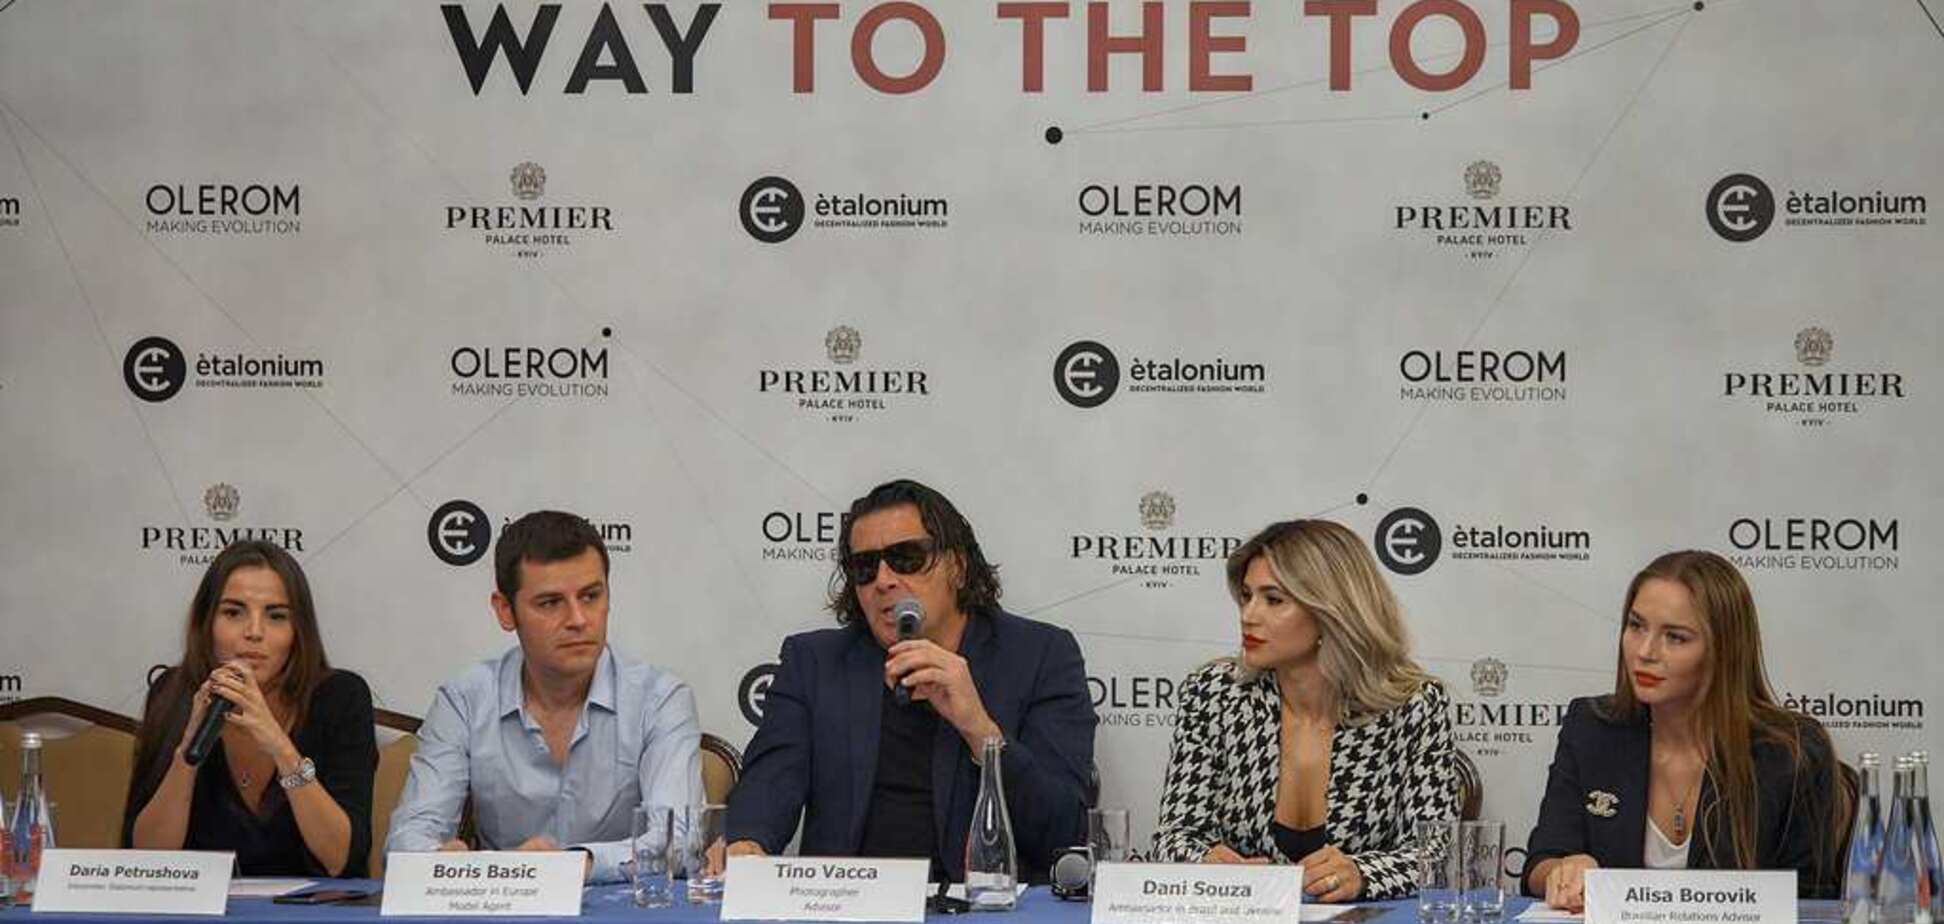 В Киеве презентовали прорыв в fashion индустрии - IT-платформу 'Etalonium'